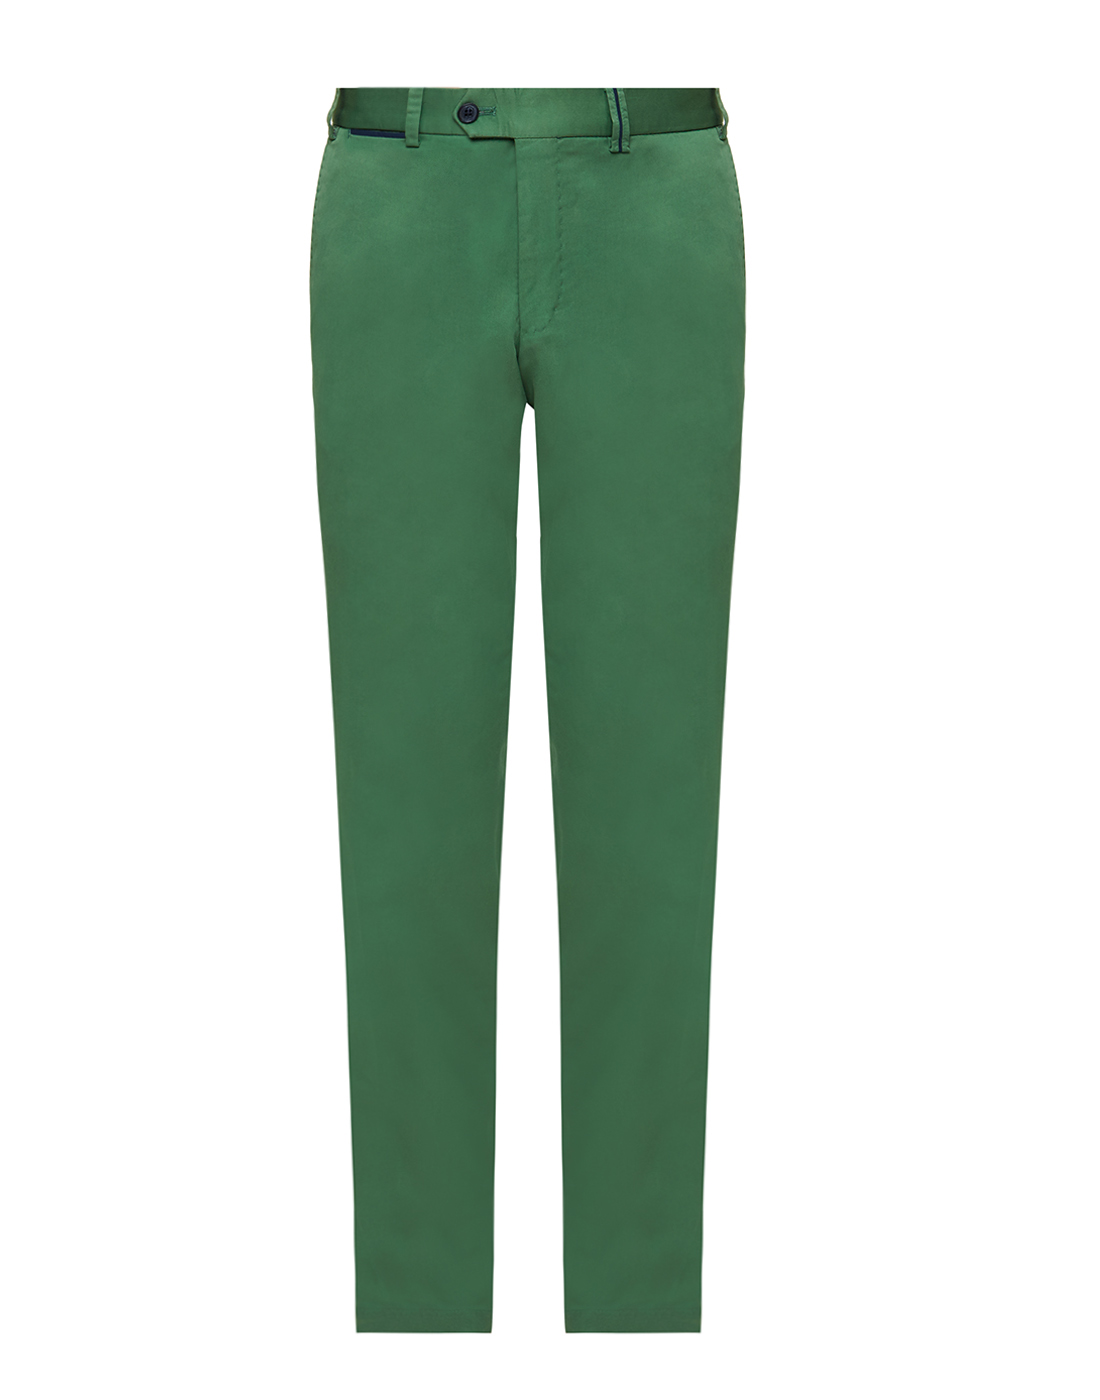 Мужские зеленые брюки Hiltl  S73295 29 53000-1